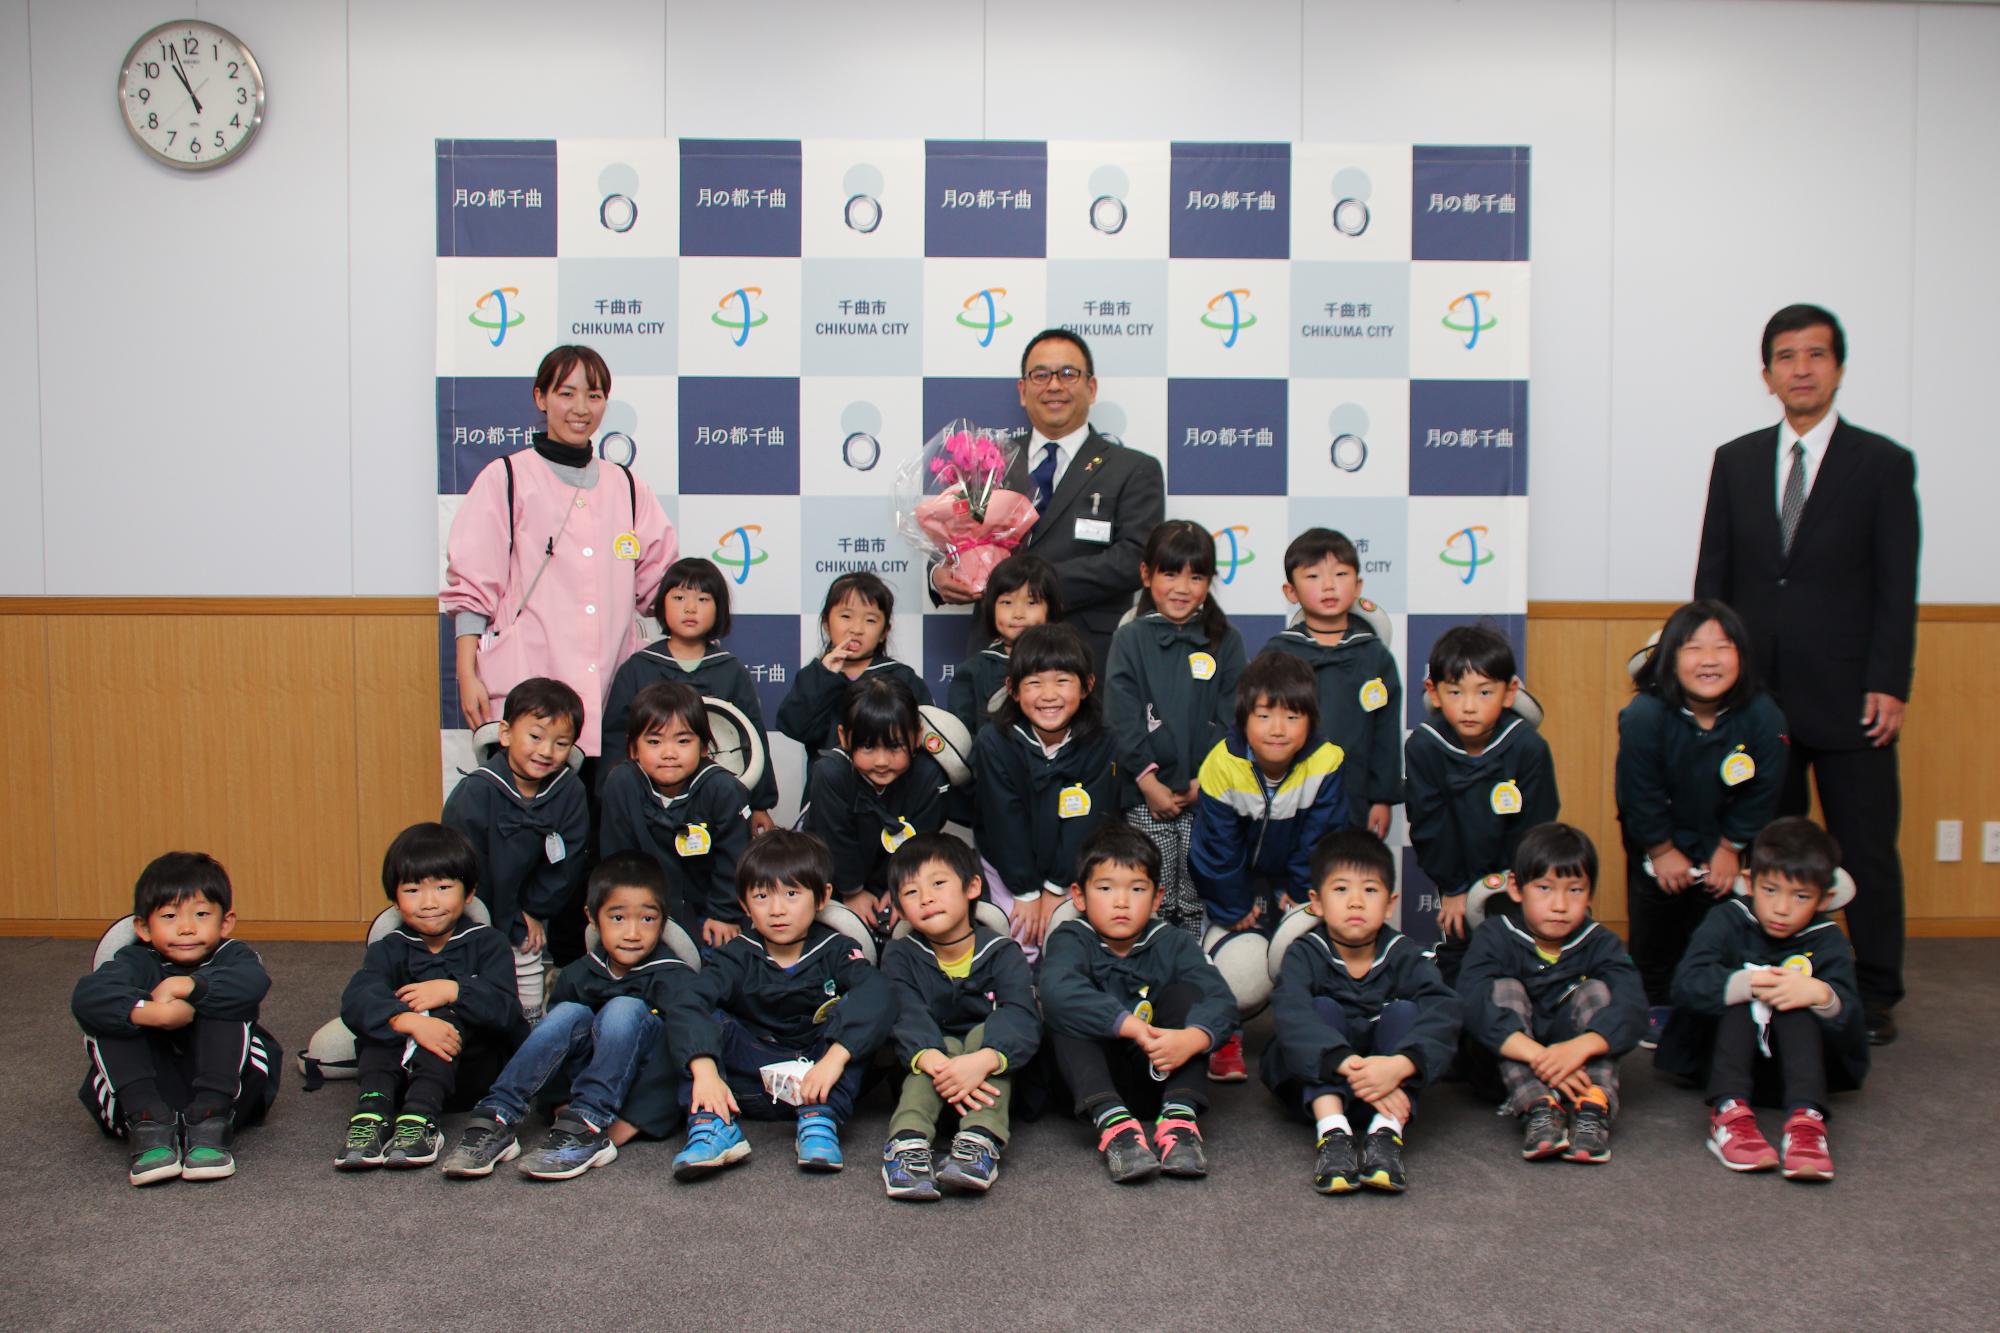 小川市長と記念撮影するさゆち幼稚園の園児たち